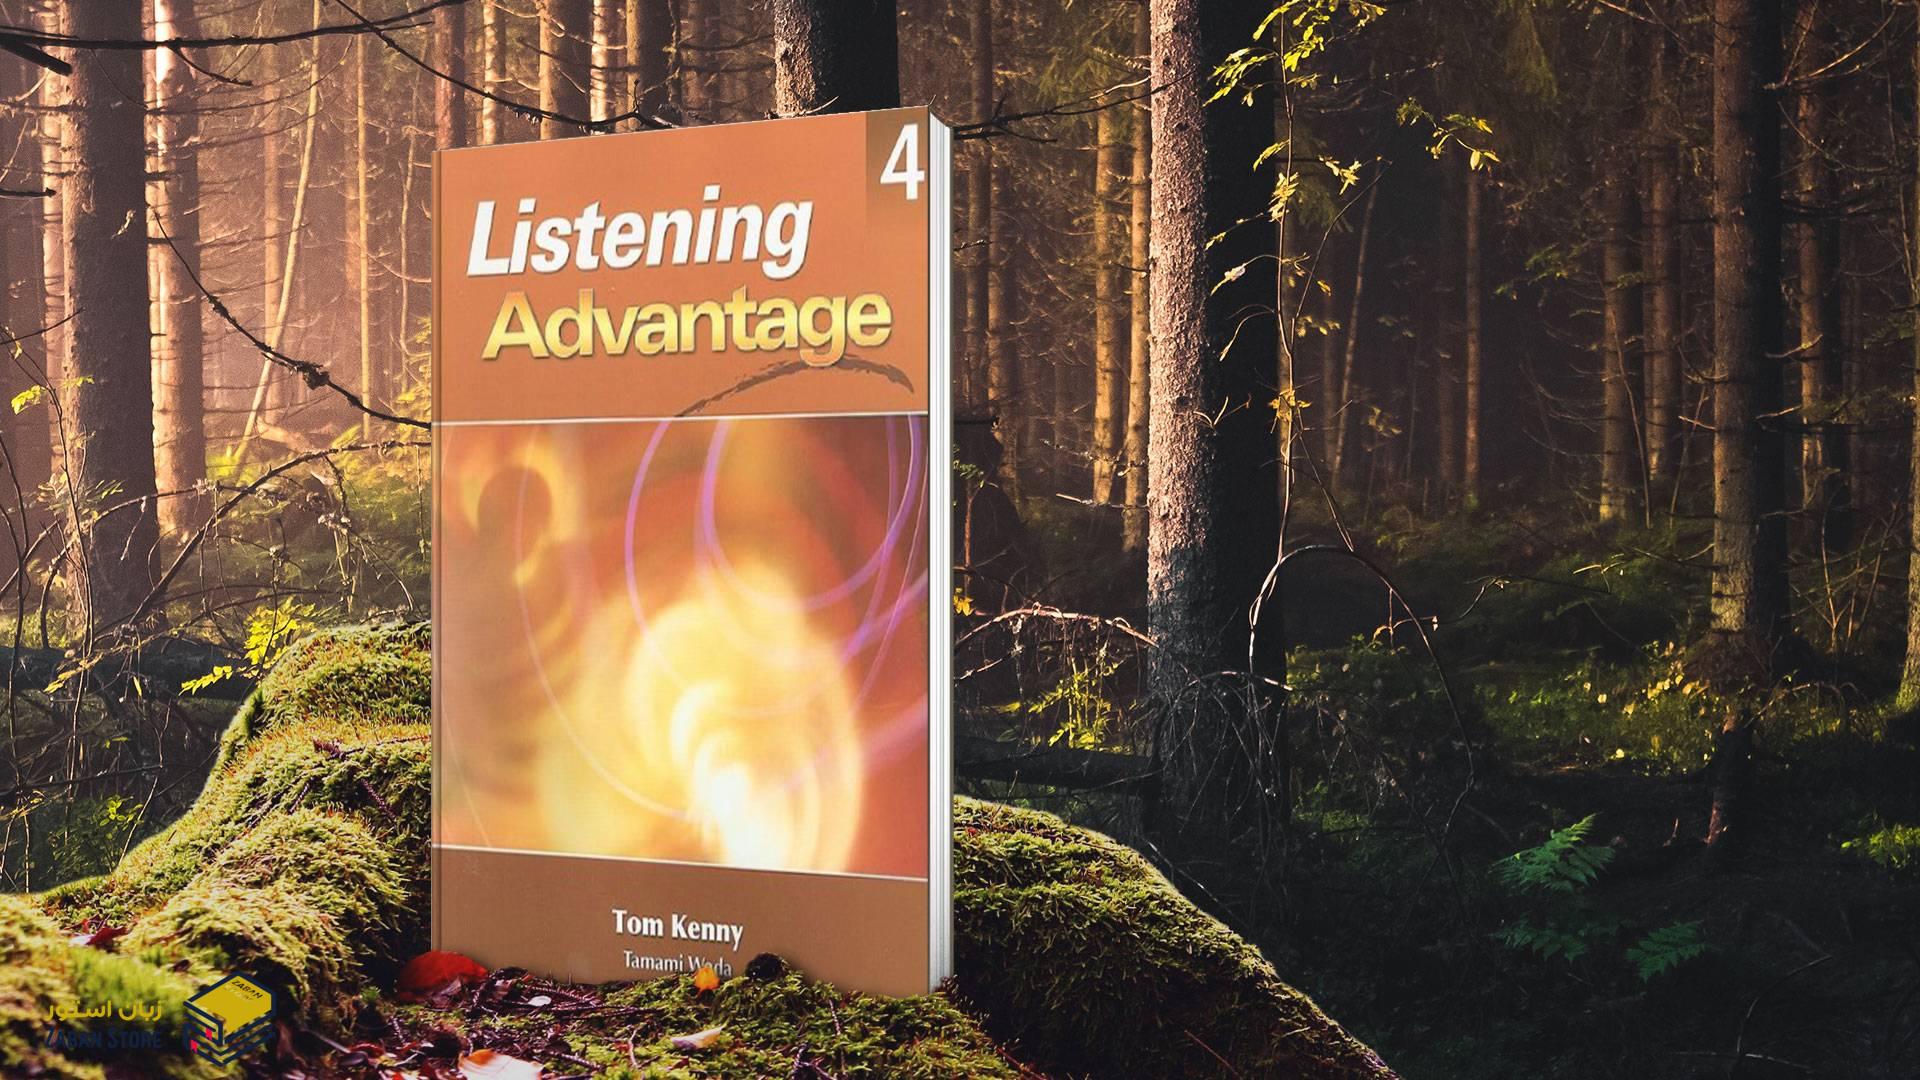 خرید کتاب زبان | کتاب زبان اصلی | Listening Advantage 4 | کتاب لیسنینگ ادونتیج چهار